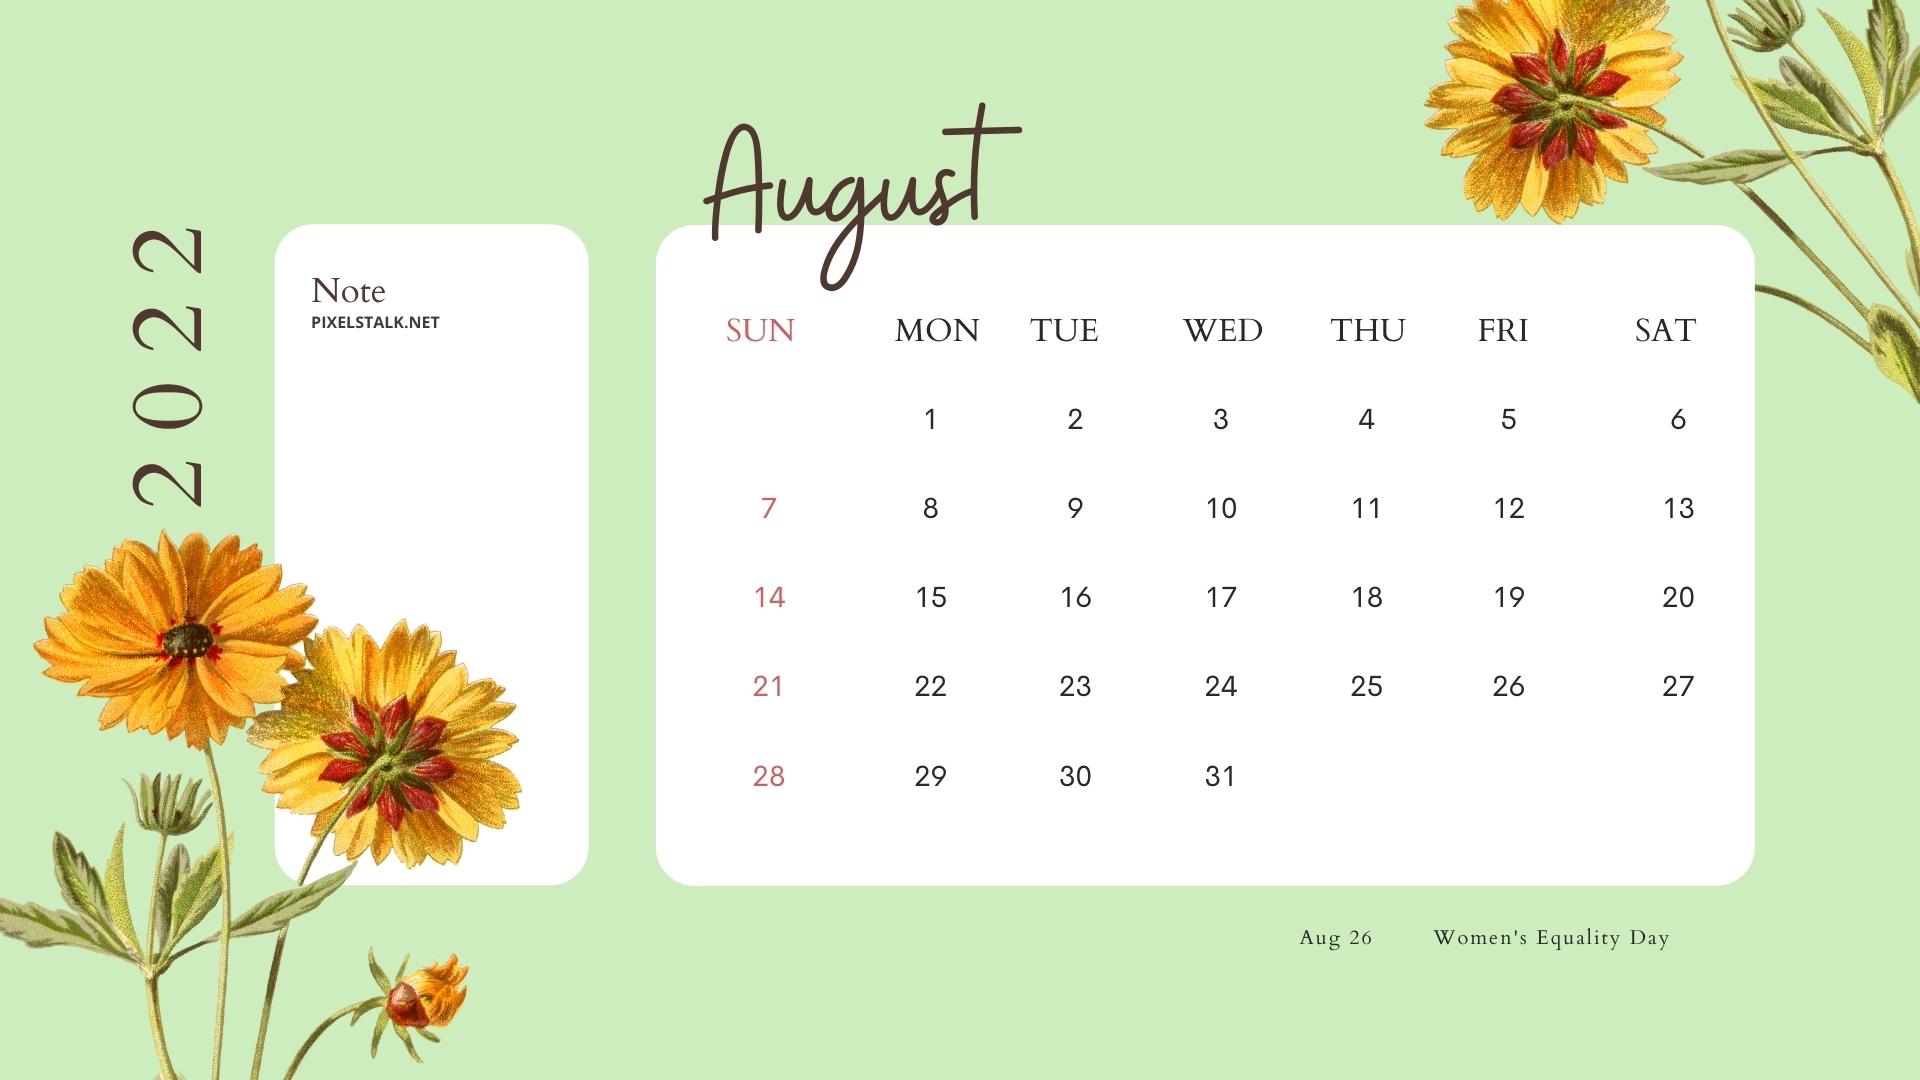 August 2022 Calendar Wallpapers HD For Desktop